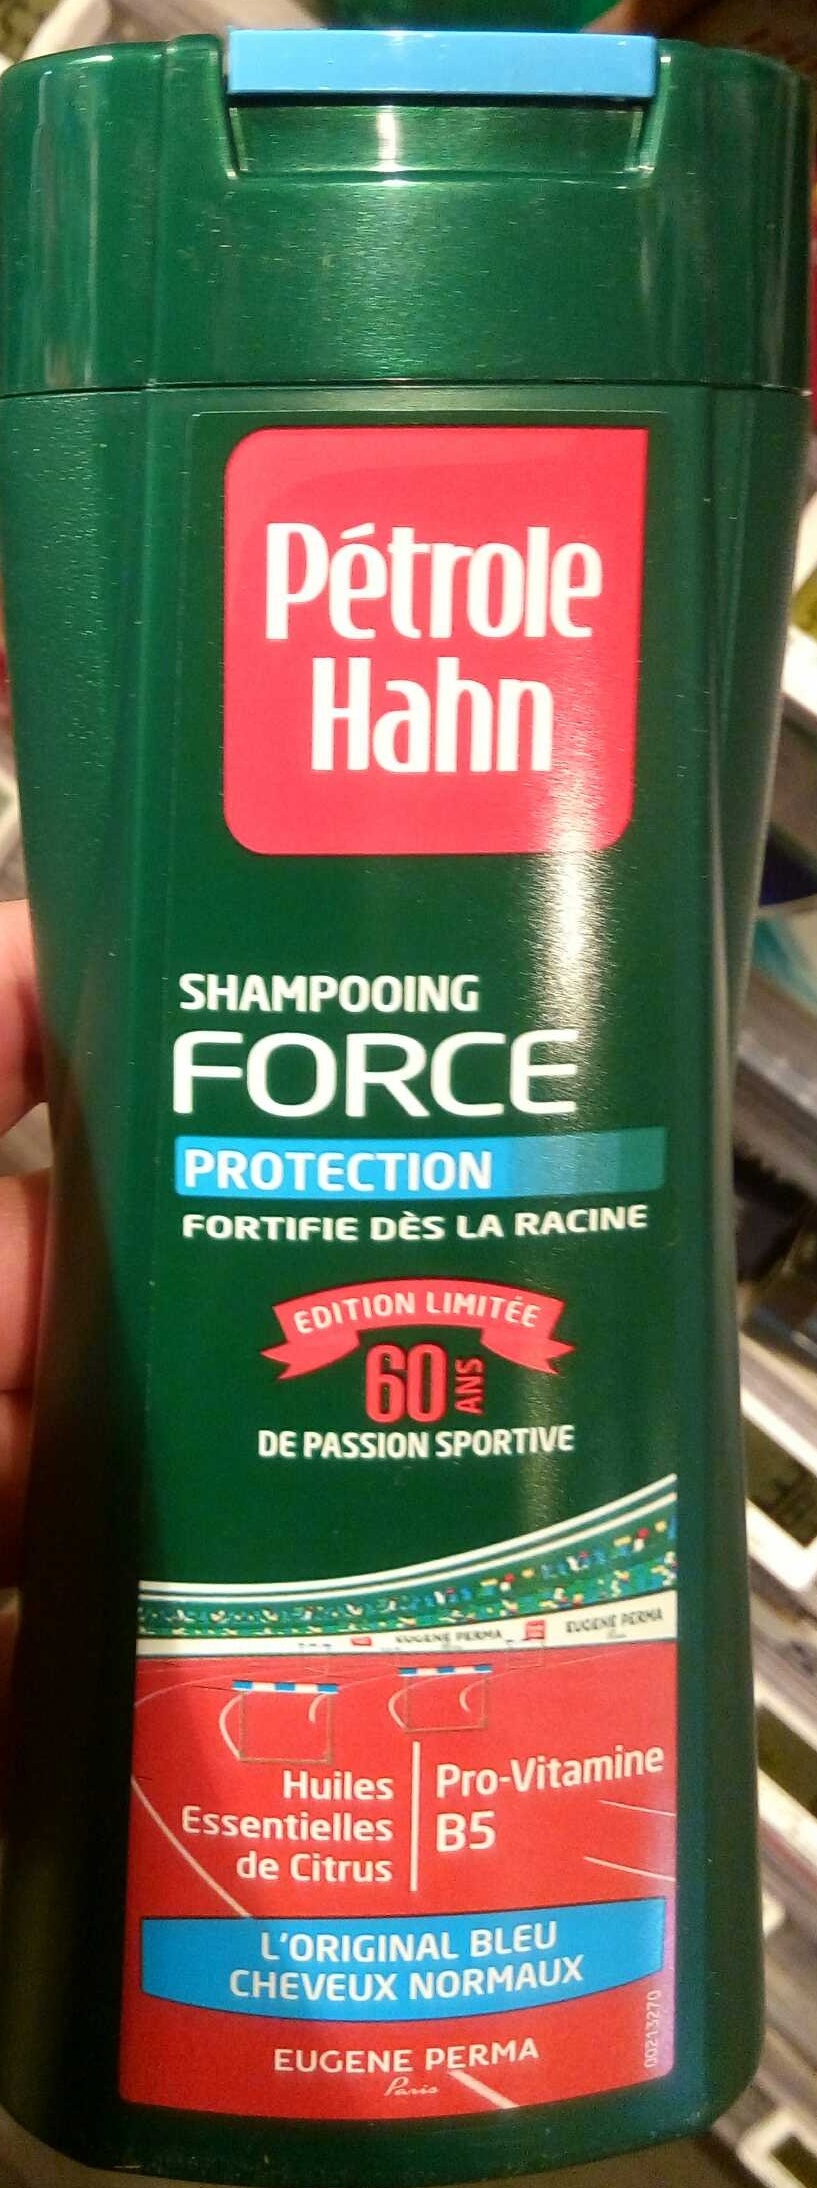 Shampooing Force Protection L'Original Bleu (édition limitée) - Product - fr